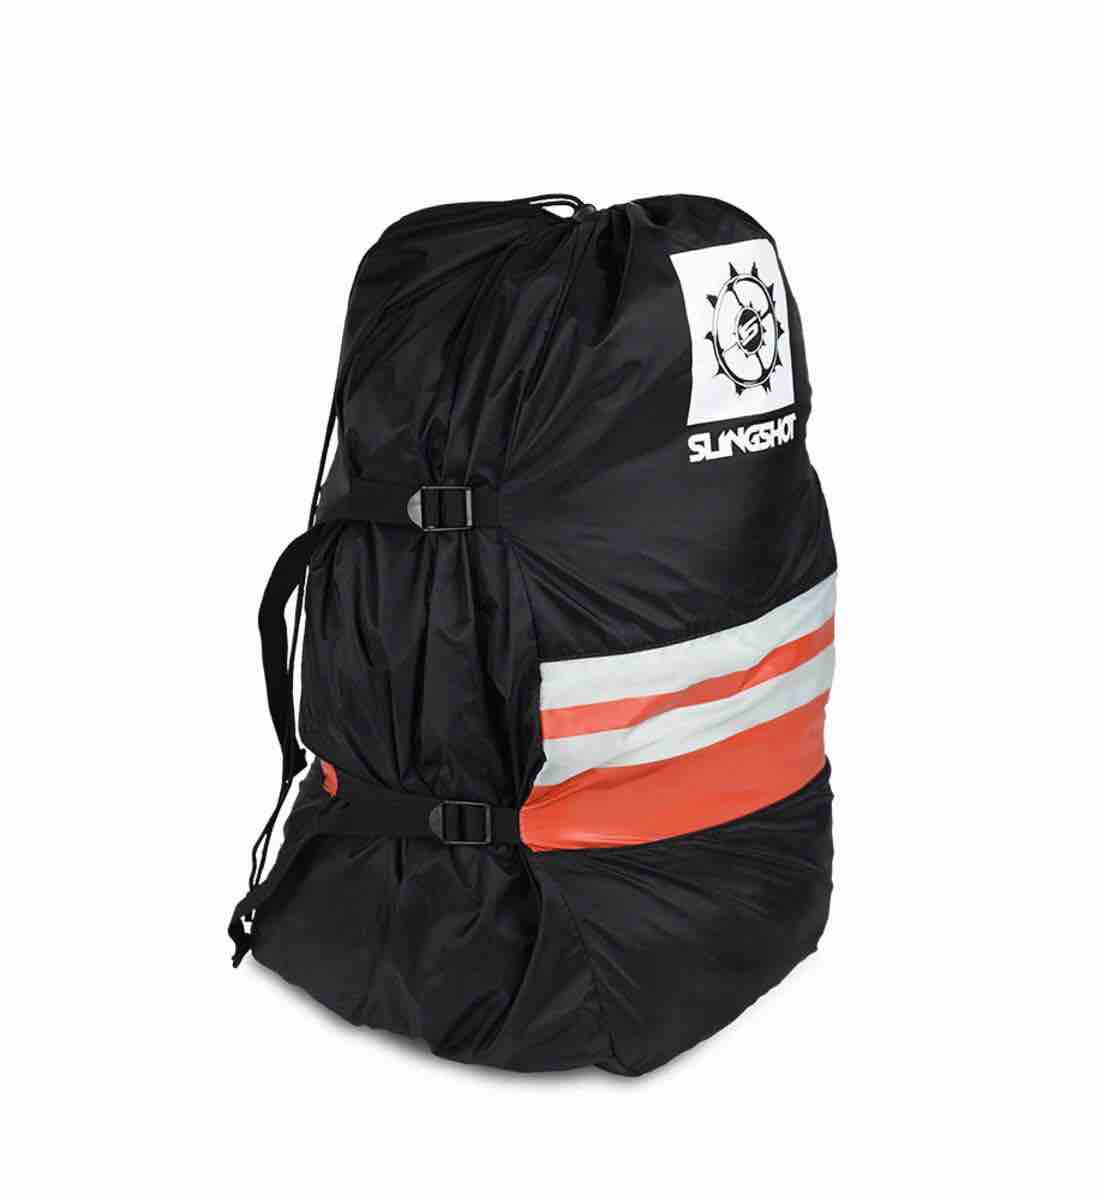 Kite backpacks - Kite Official Site